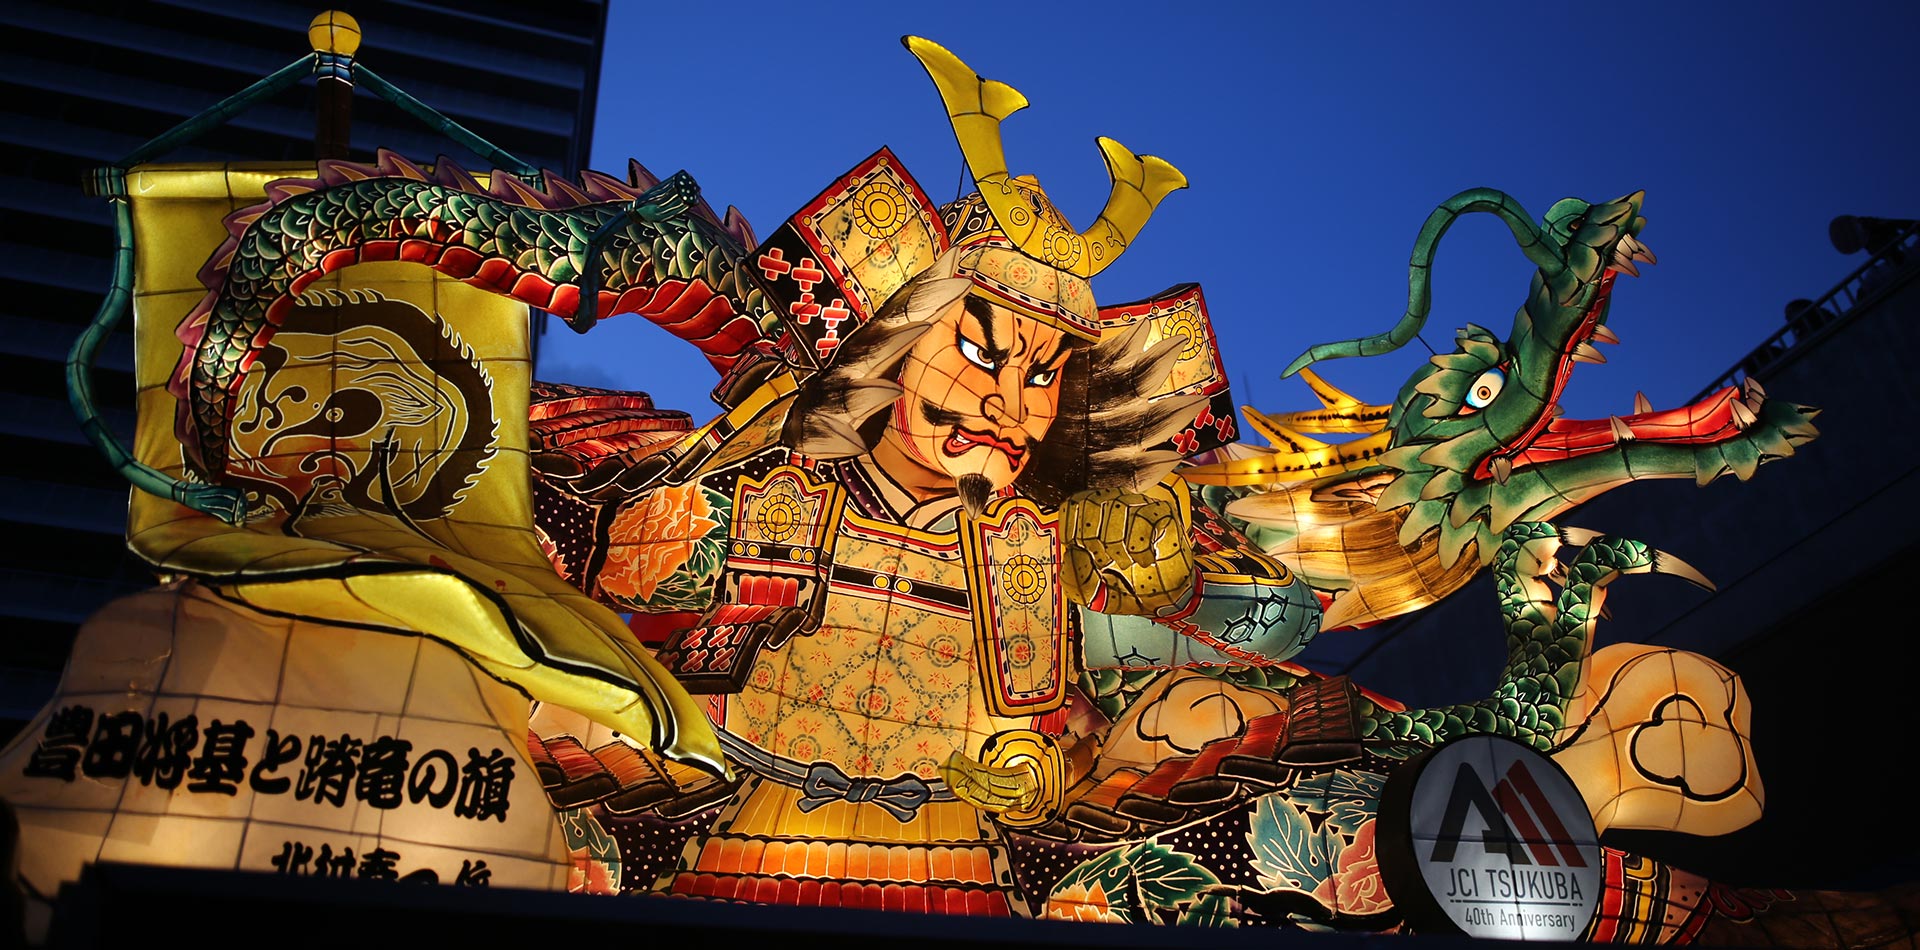 8 月 24 日至 25 日筑波市最大規模的夏季祭典「松立筑波」將舉行